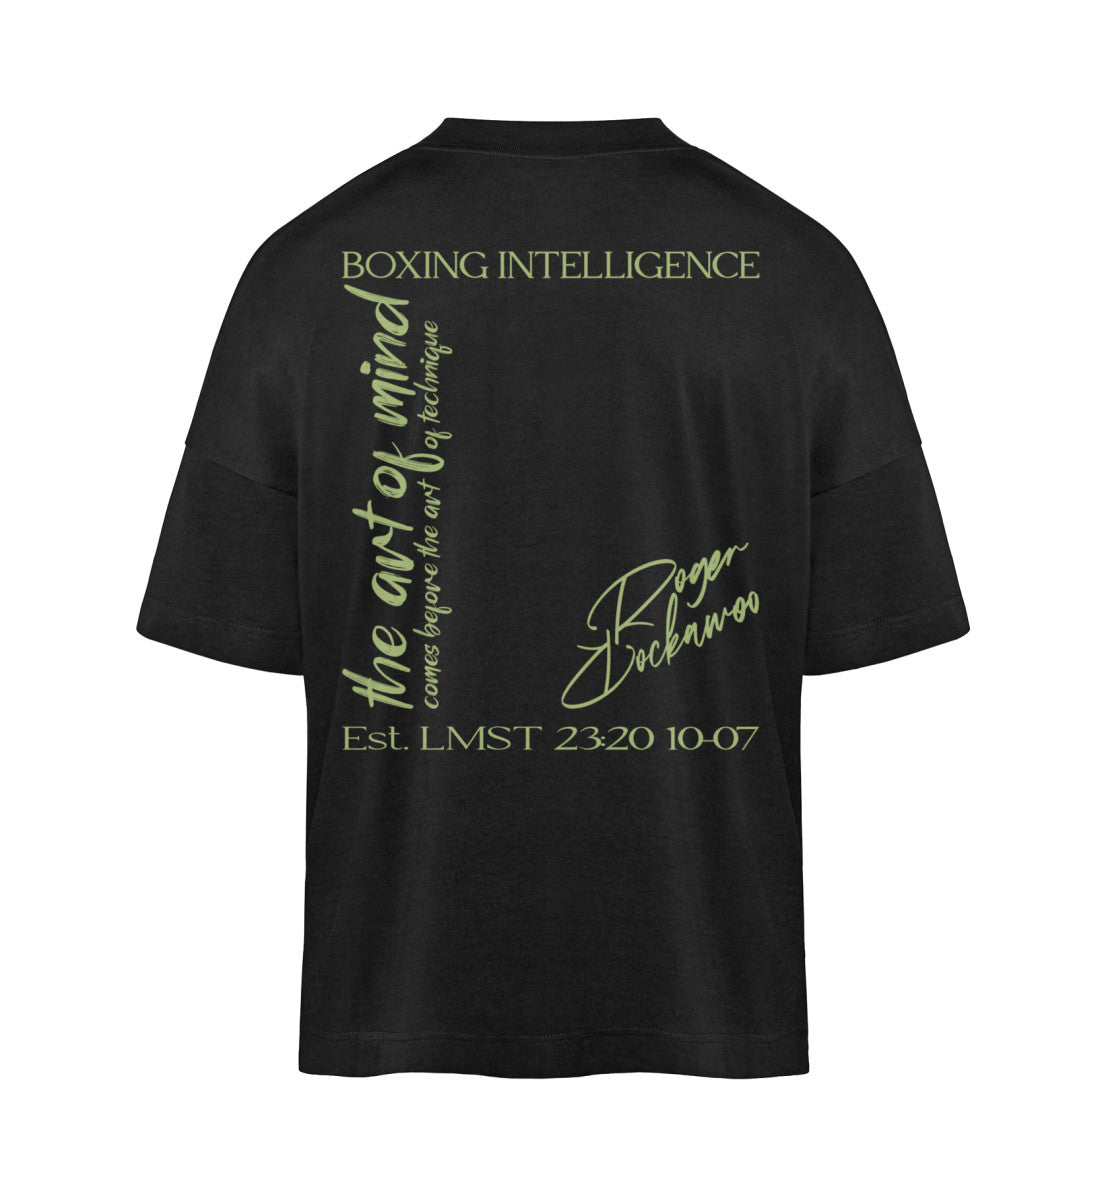 Schwarzes T-Shirt Unisex Oversize Fit für Frauen und Männer bedruckt mit dem Design der Roger Rockawoo Kollektion Boxing Intelligence